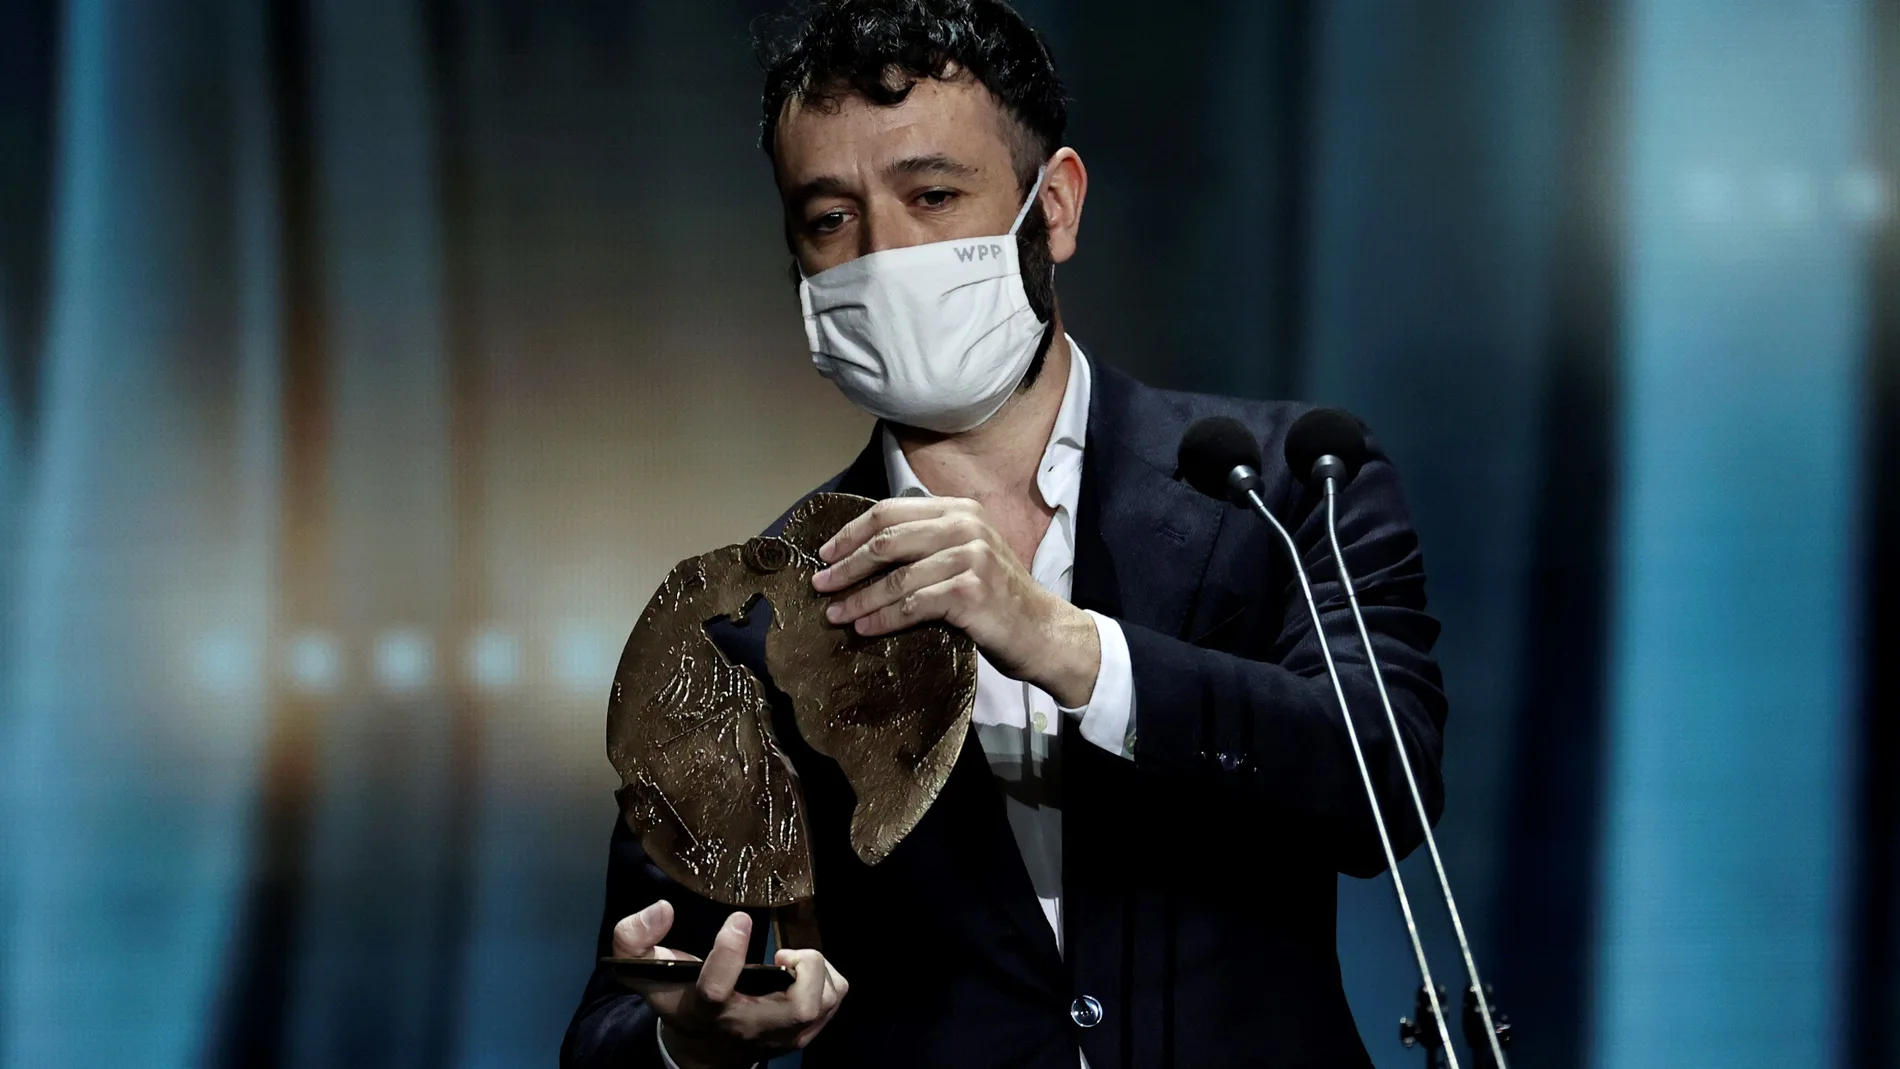 El realizador Rodrigo Sorogoyen recibió con mascarilla el premio a la "Mejor Serie" por su trabajo "Antidisturbios"